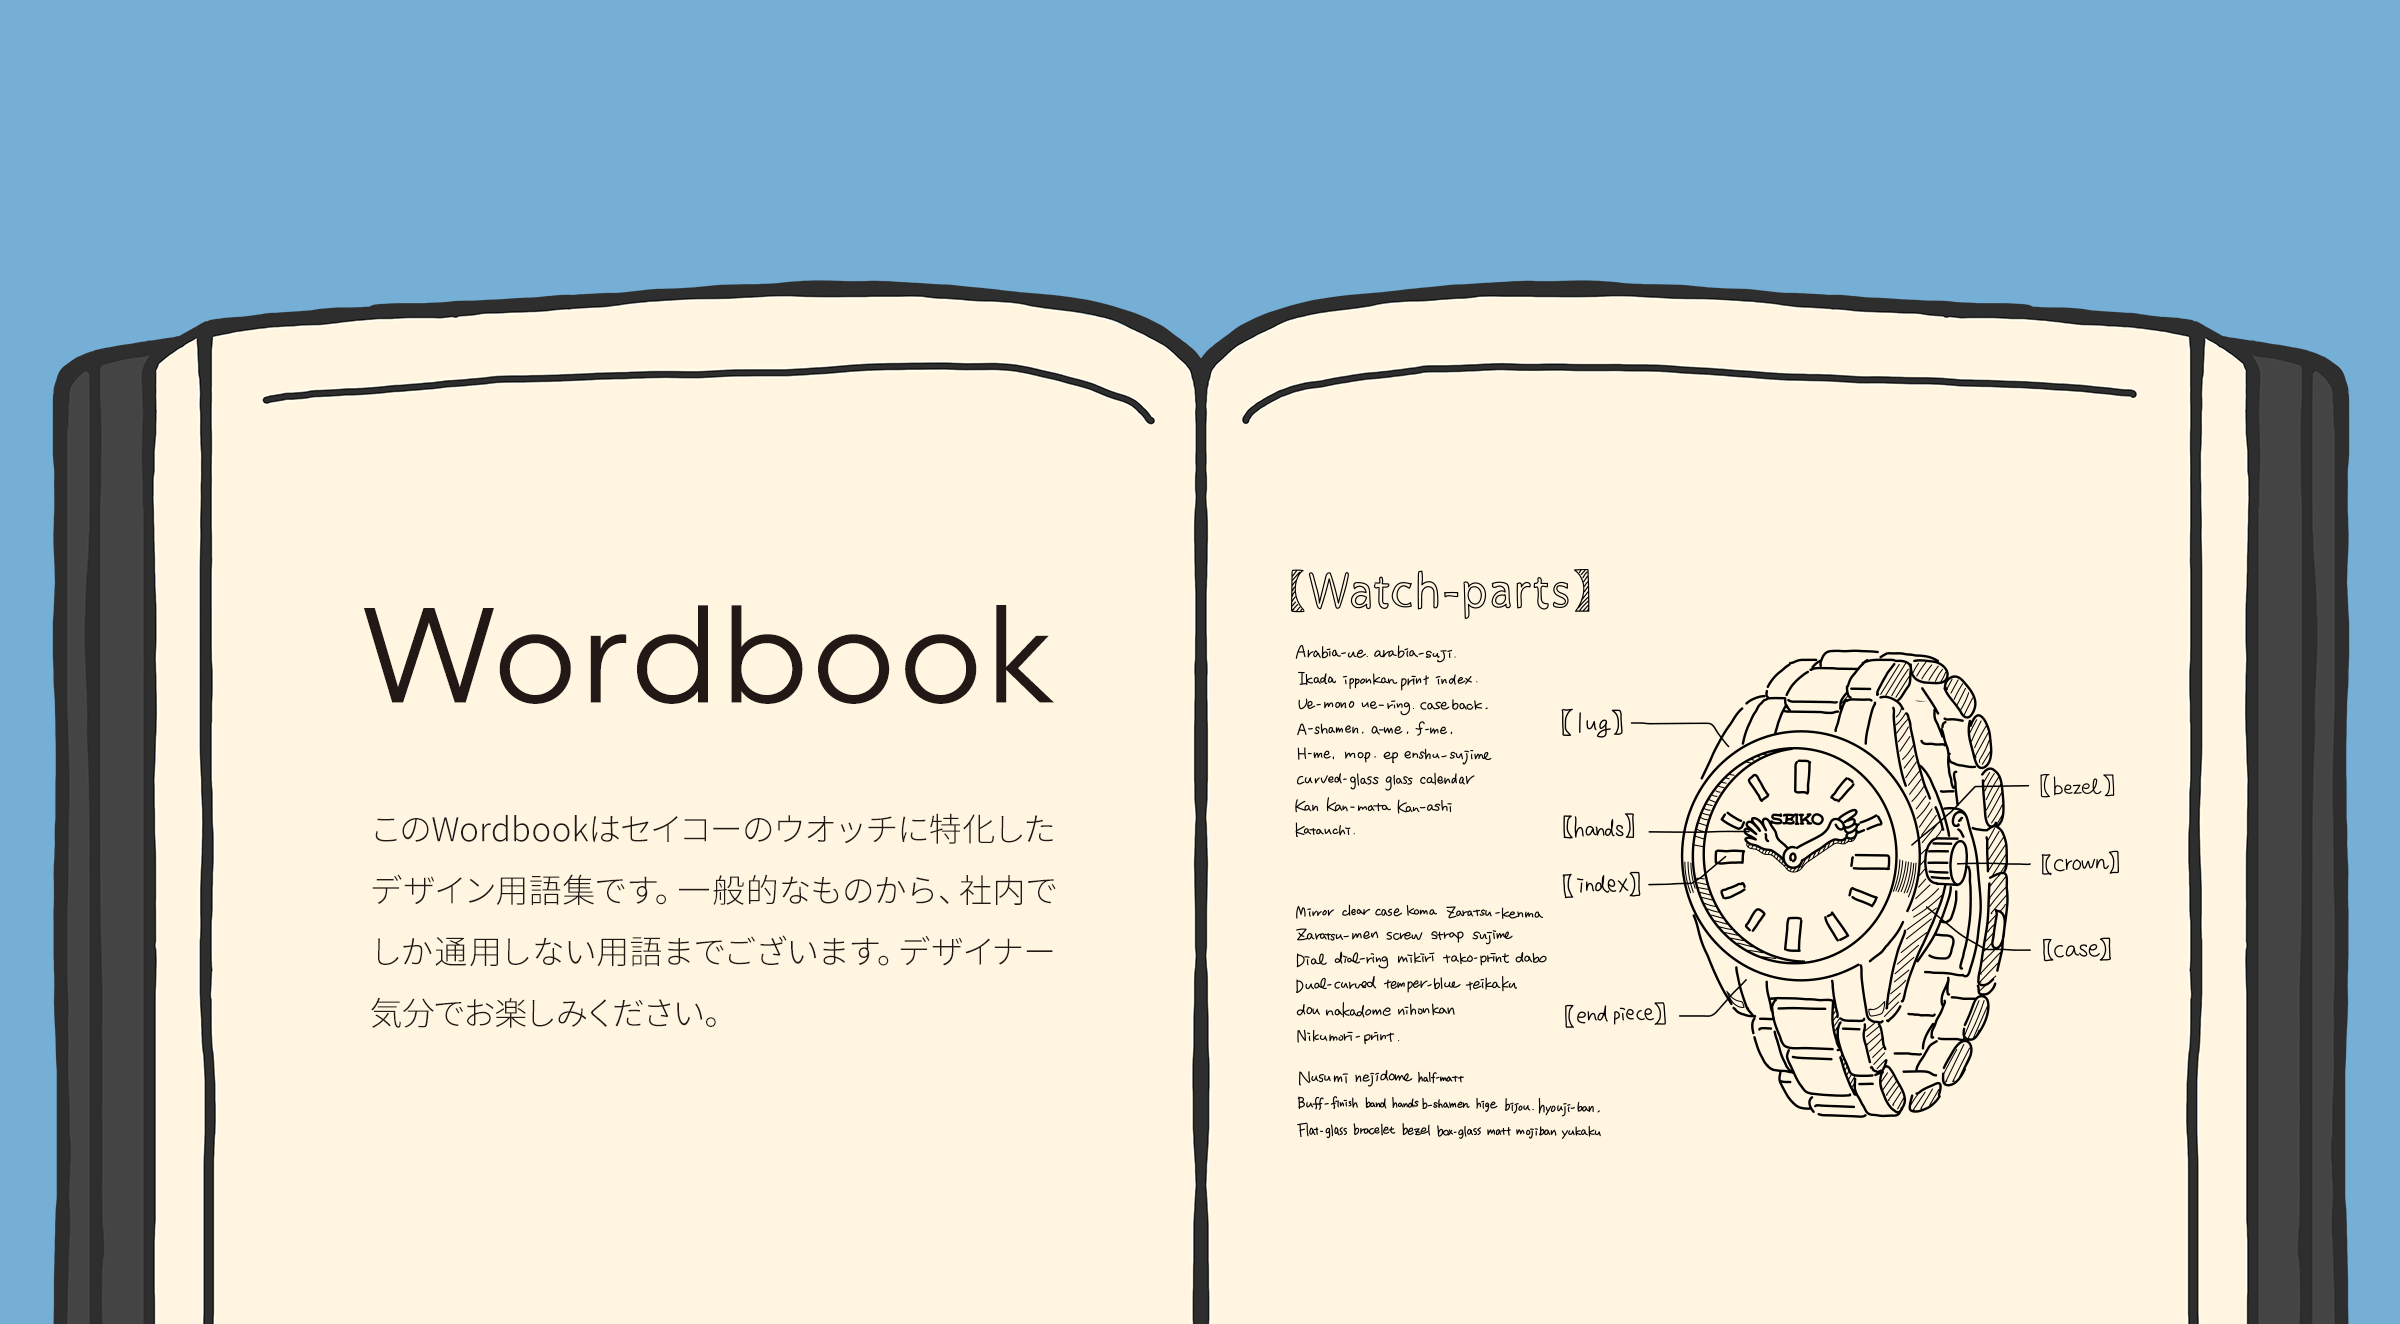 Wordbook このWordbookはセイコーのウオッチに特化したデザイン用語集です。一般的なものから、社内でしか通用しない用語までございます。デザイナー気分でお楽しみください。